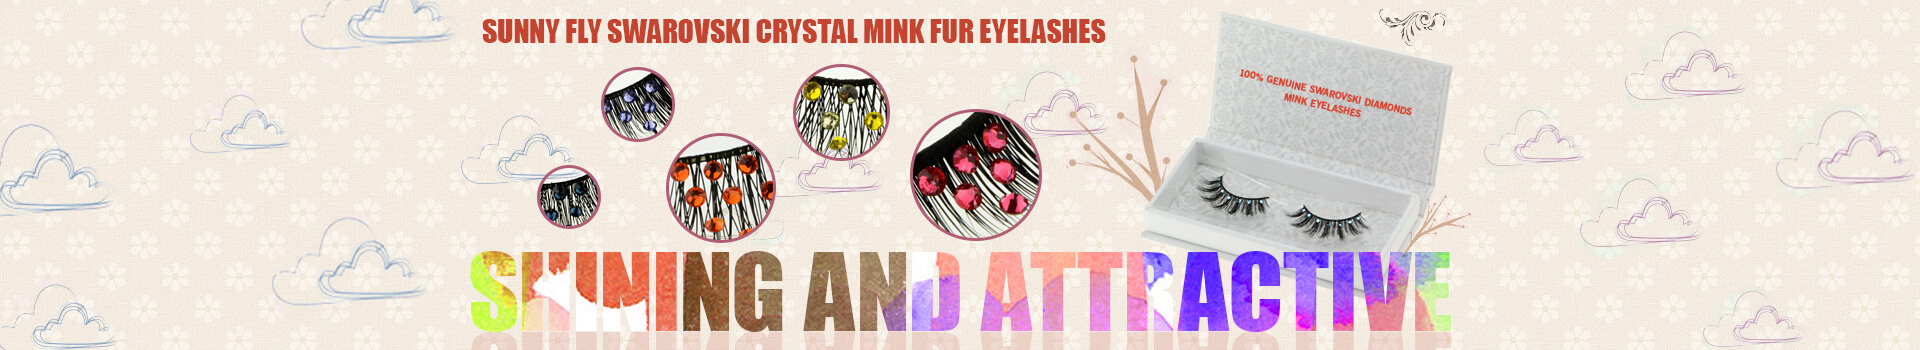 Swarovski Crystal Mink Fur Eyelashes MS34